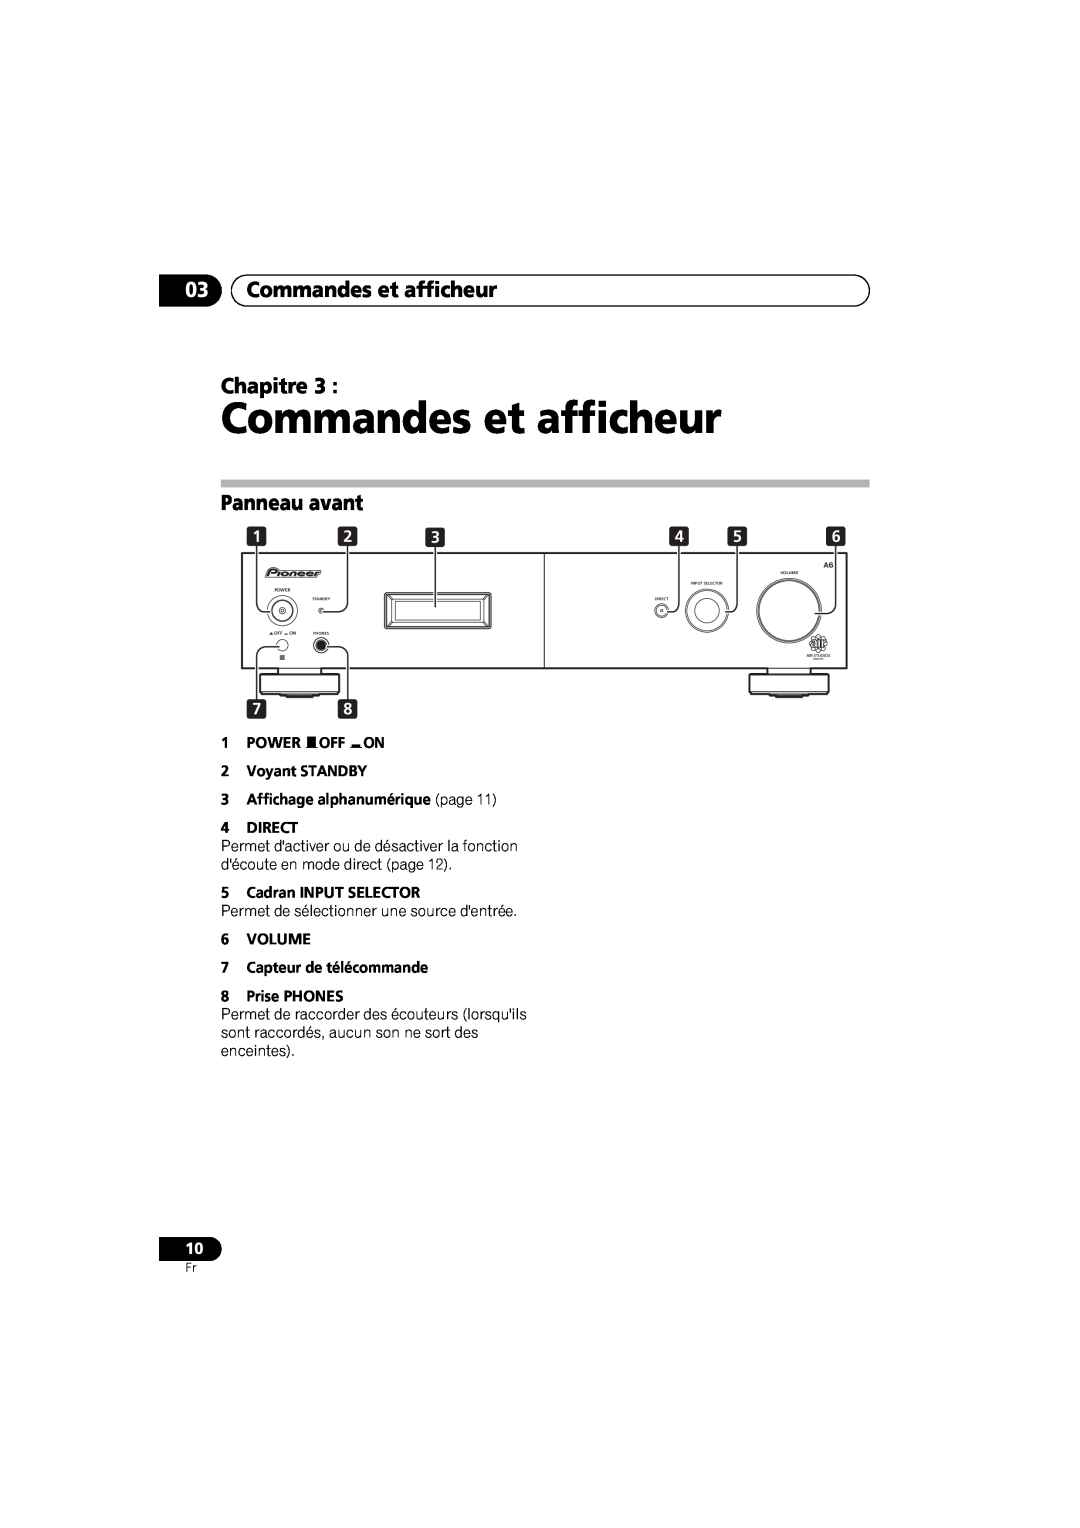 Pioneer A-A6-J manual 03Commandes et afficheur Chapitre, Panneau avant, 1POWER OFF ON 2Voyant STANDBY 